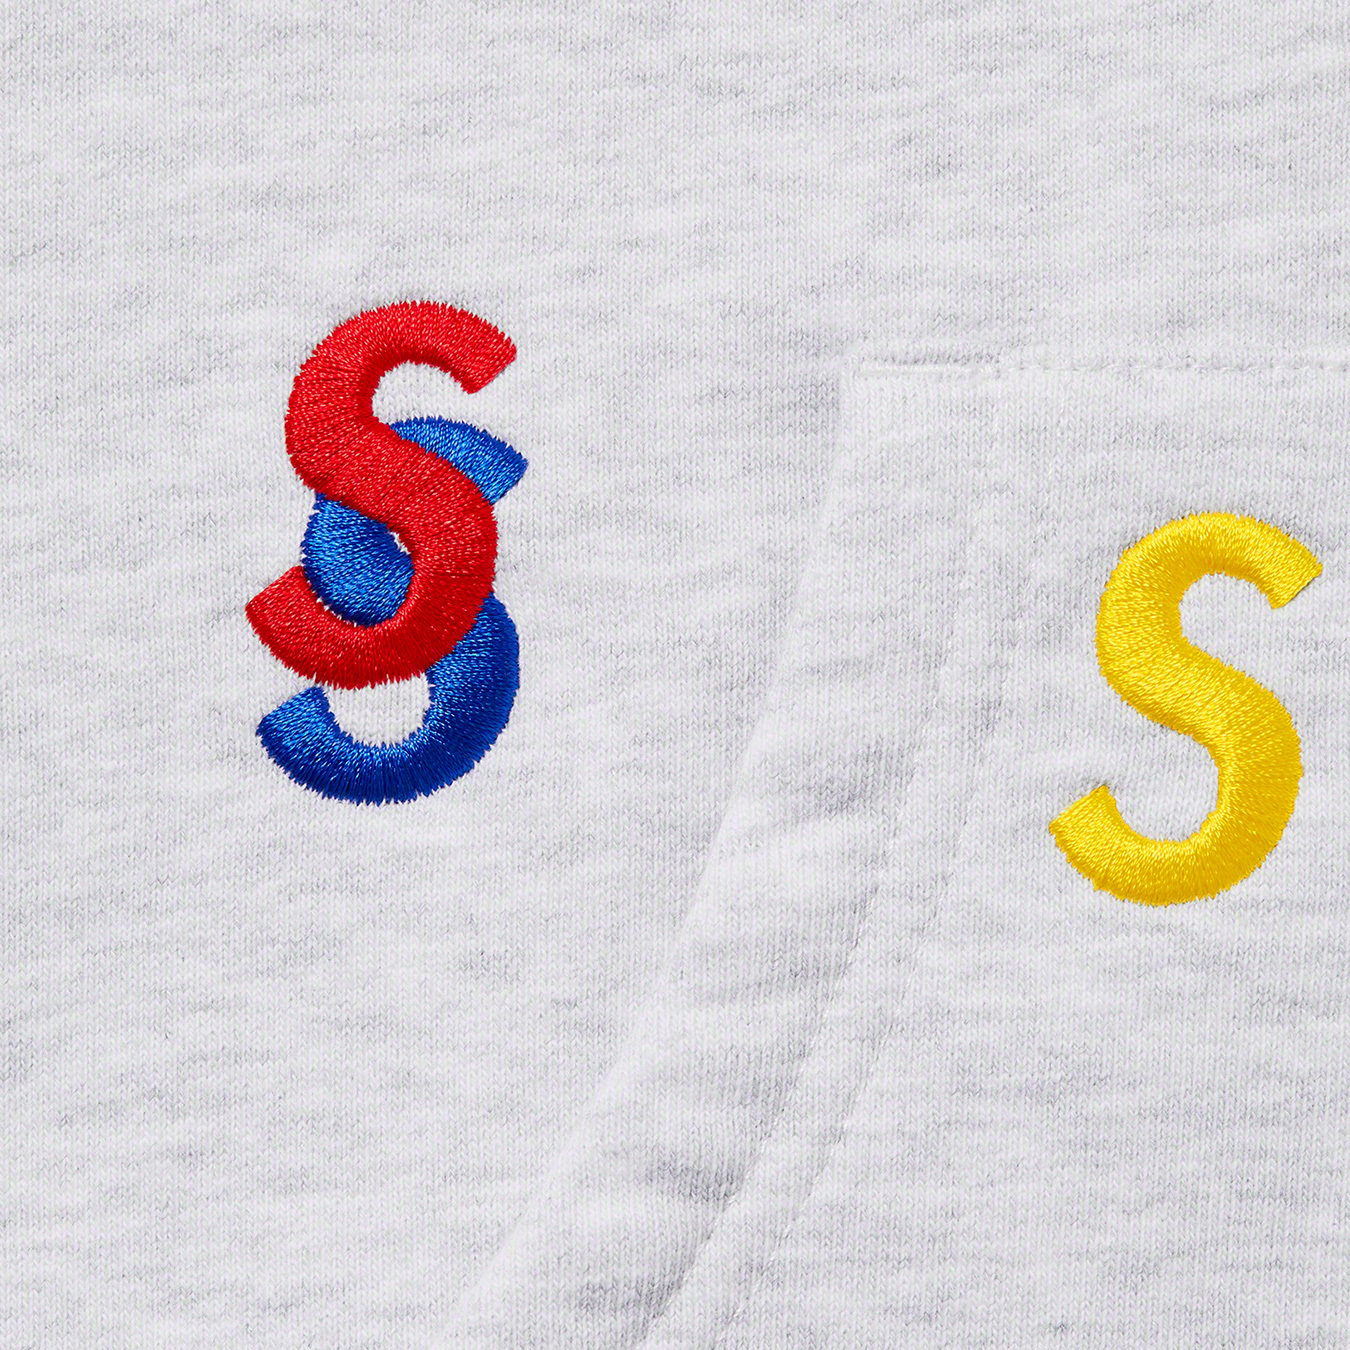 受注生産対応 supreme Embroidered S Hooded Sweatshirt パーカー